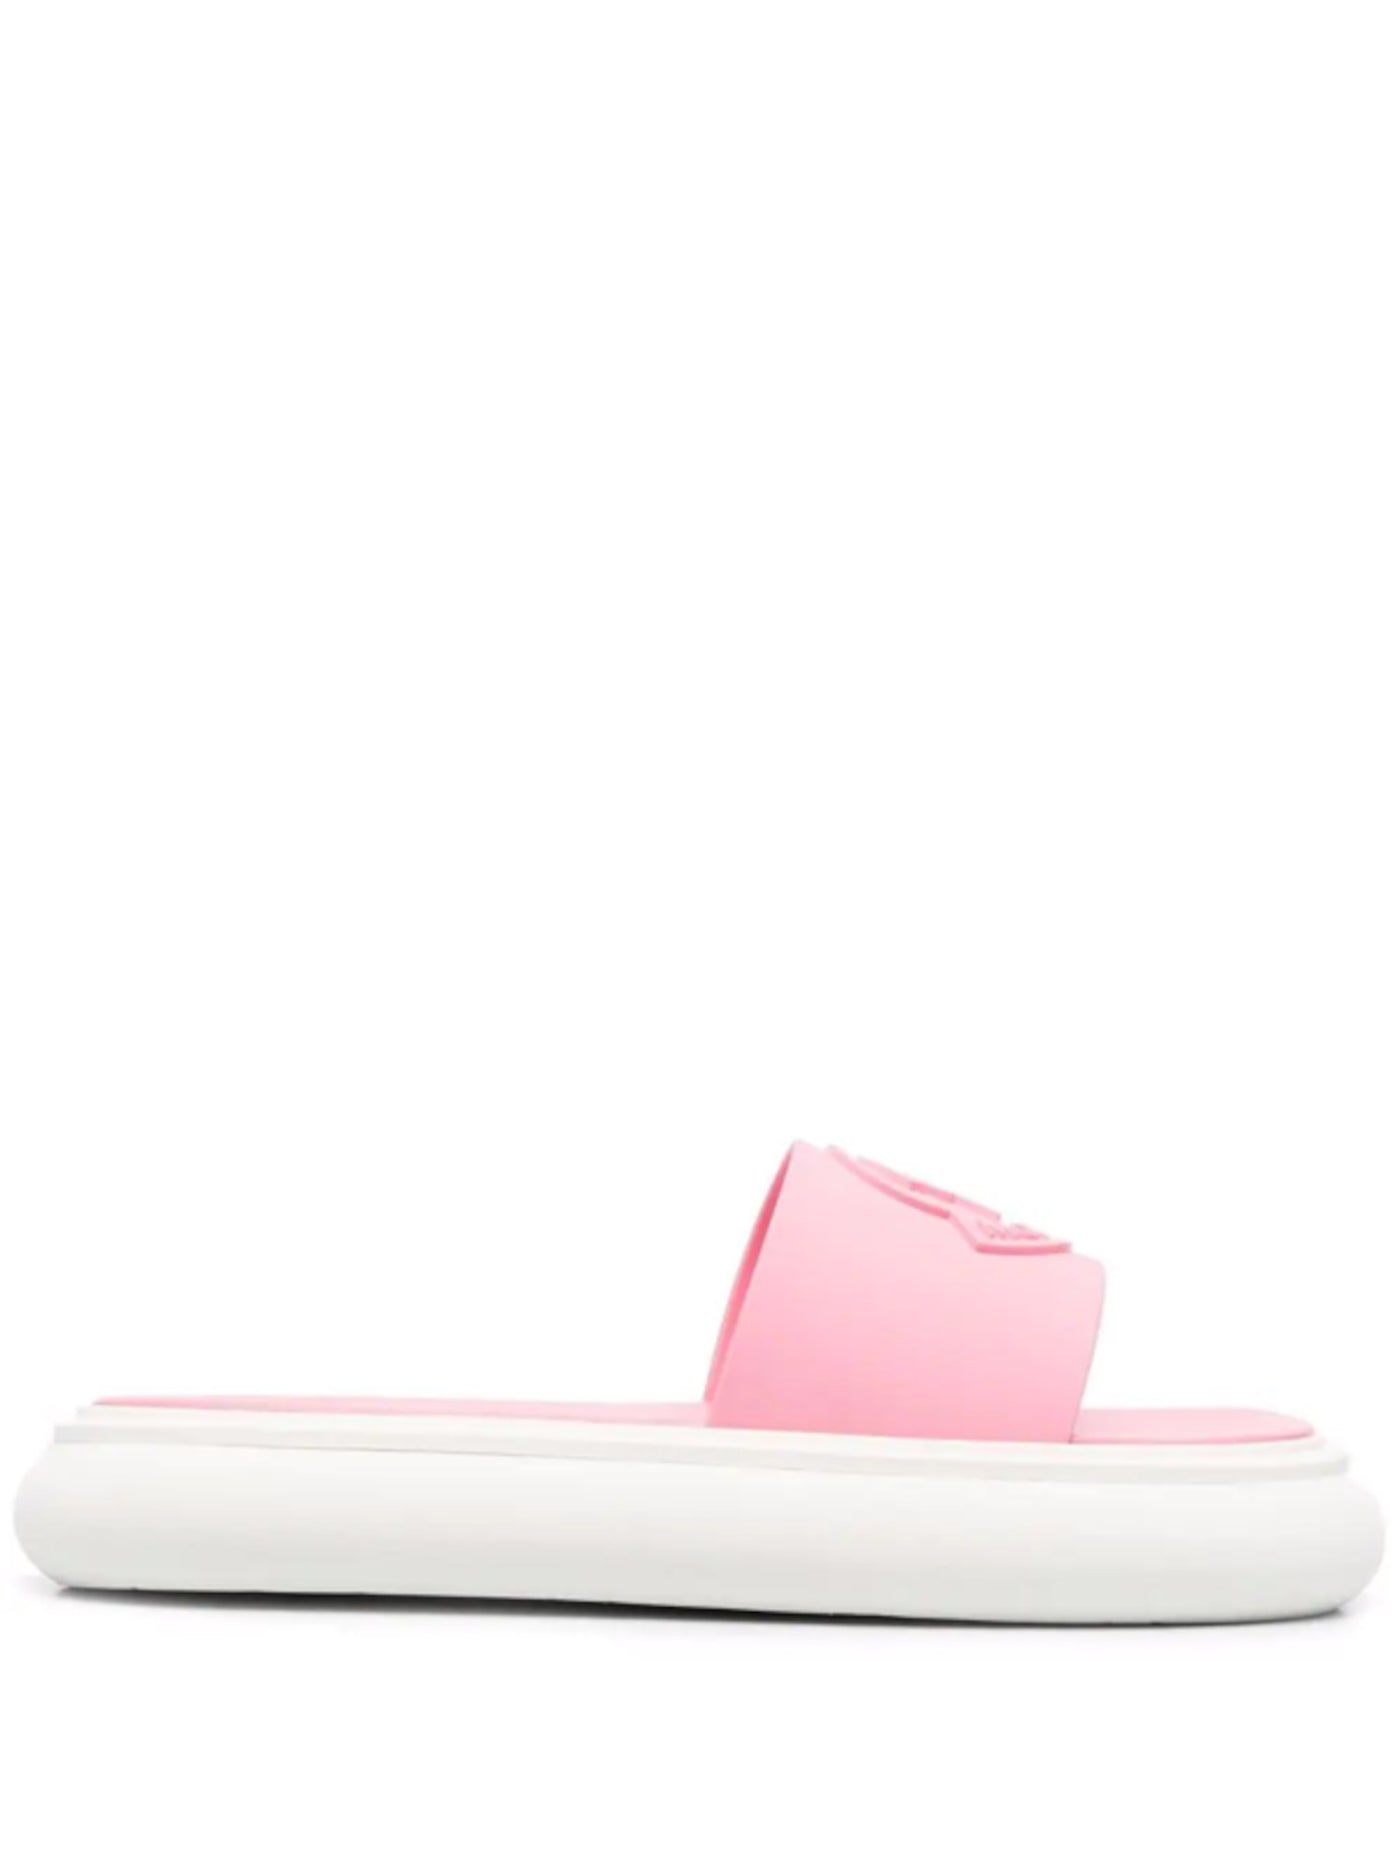 MONCLER Womens Pink Logo Slyder Round Toe Platform Slip On Slide Sandals 39